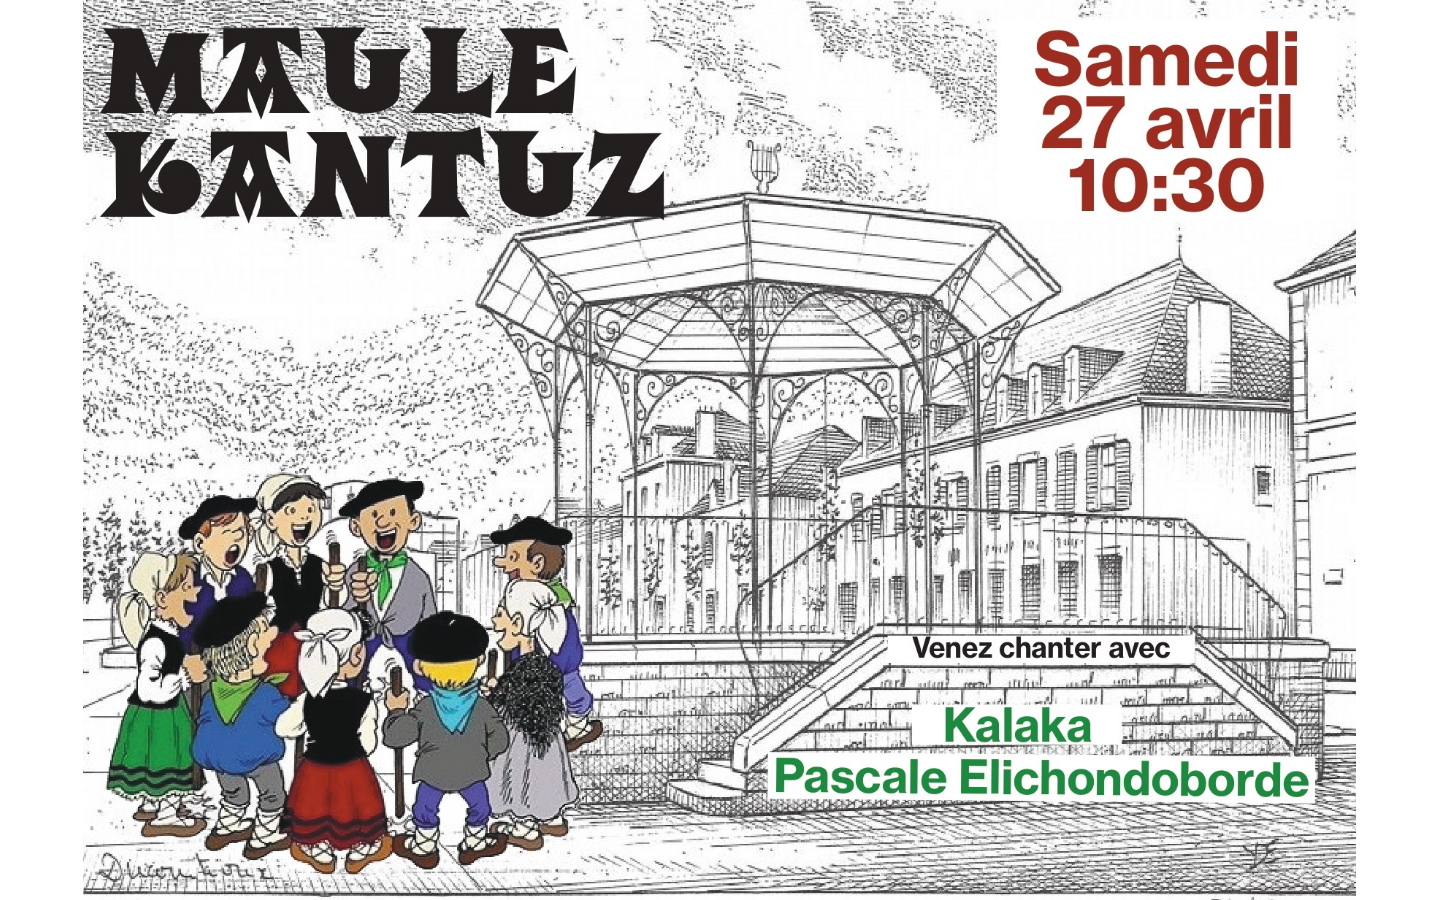 Maule Kantuz rendez-vous de chants basques